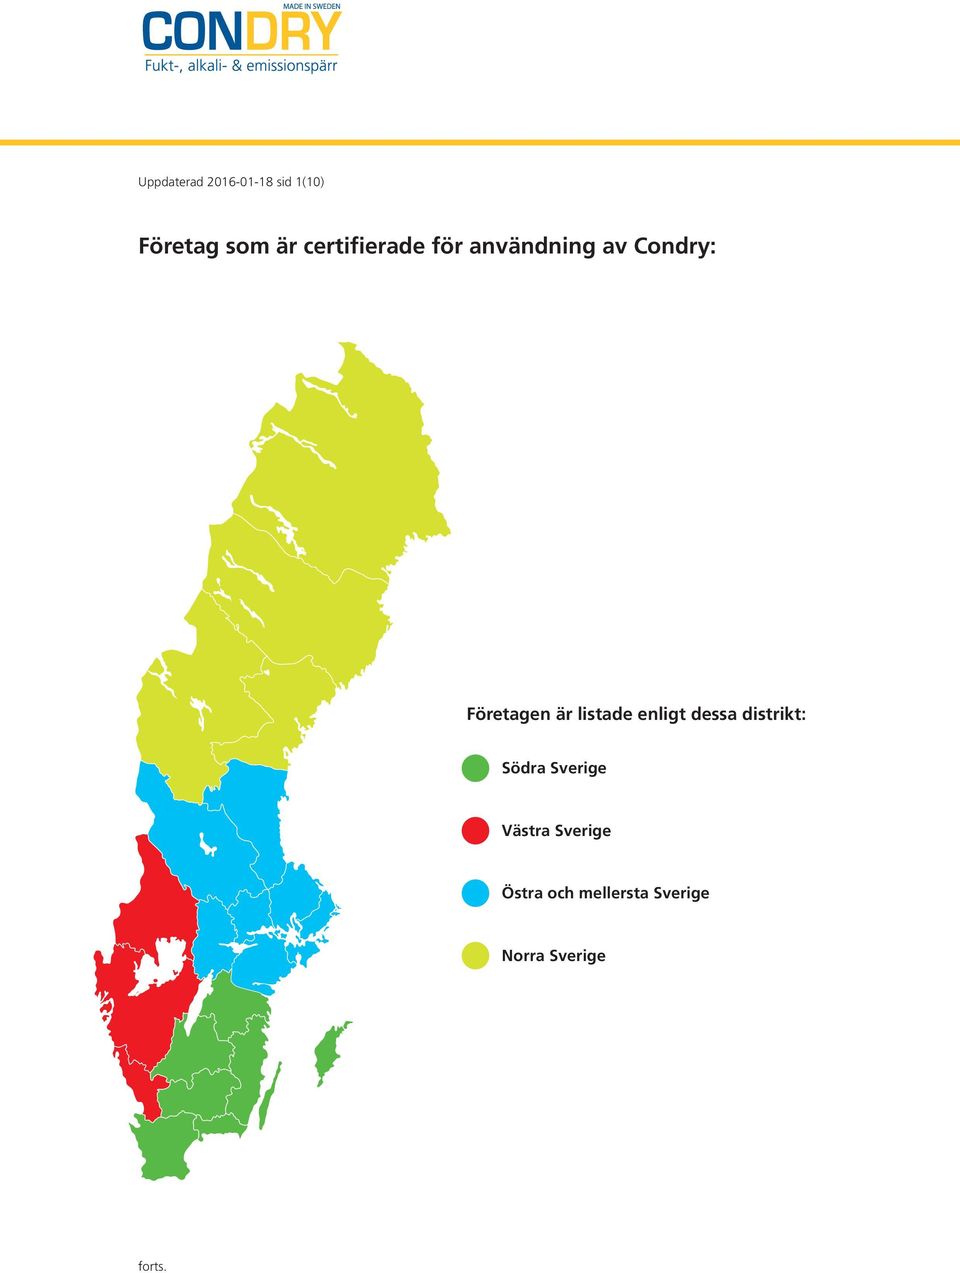 är listade enligt dessa distrikt: Södra Sverige